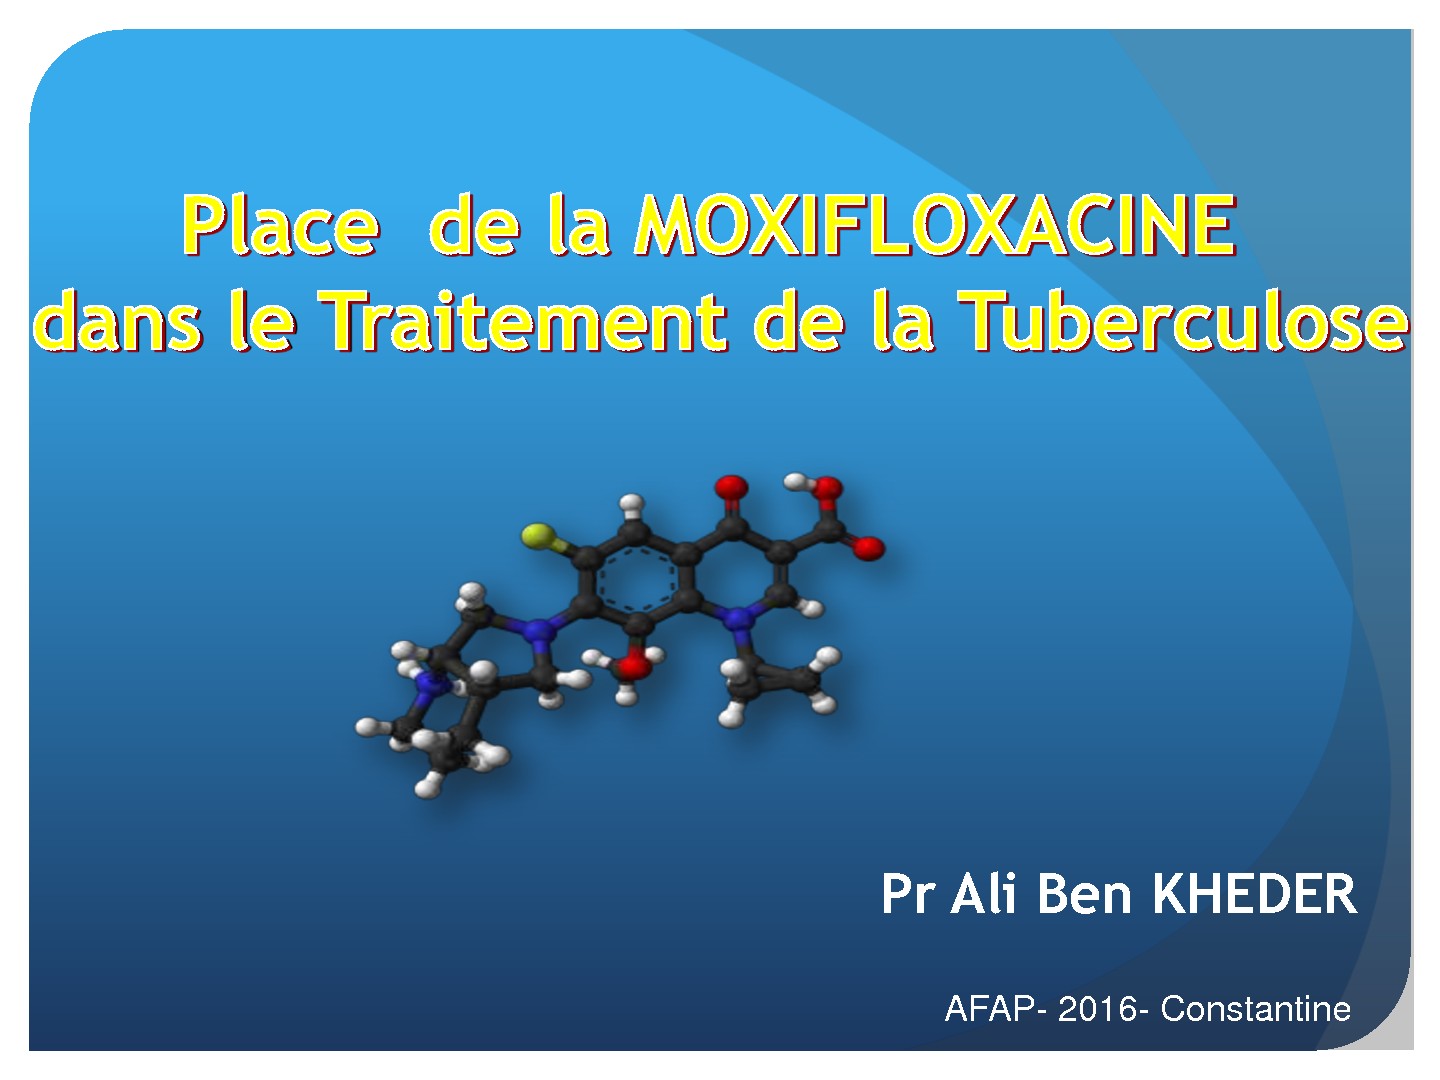 Place de la Moxifloxacine dans le traitement de la tuberculose. Ali Ben Kheder